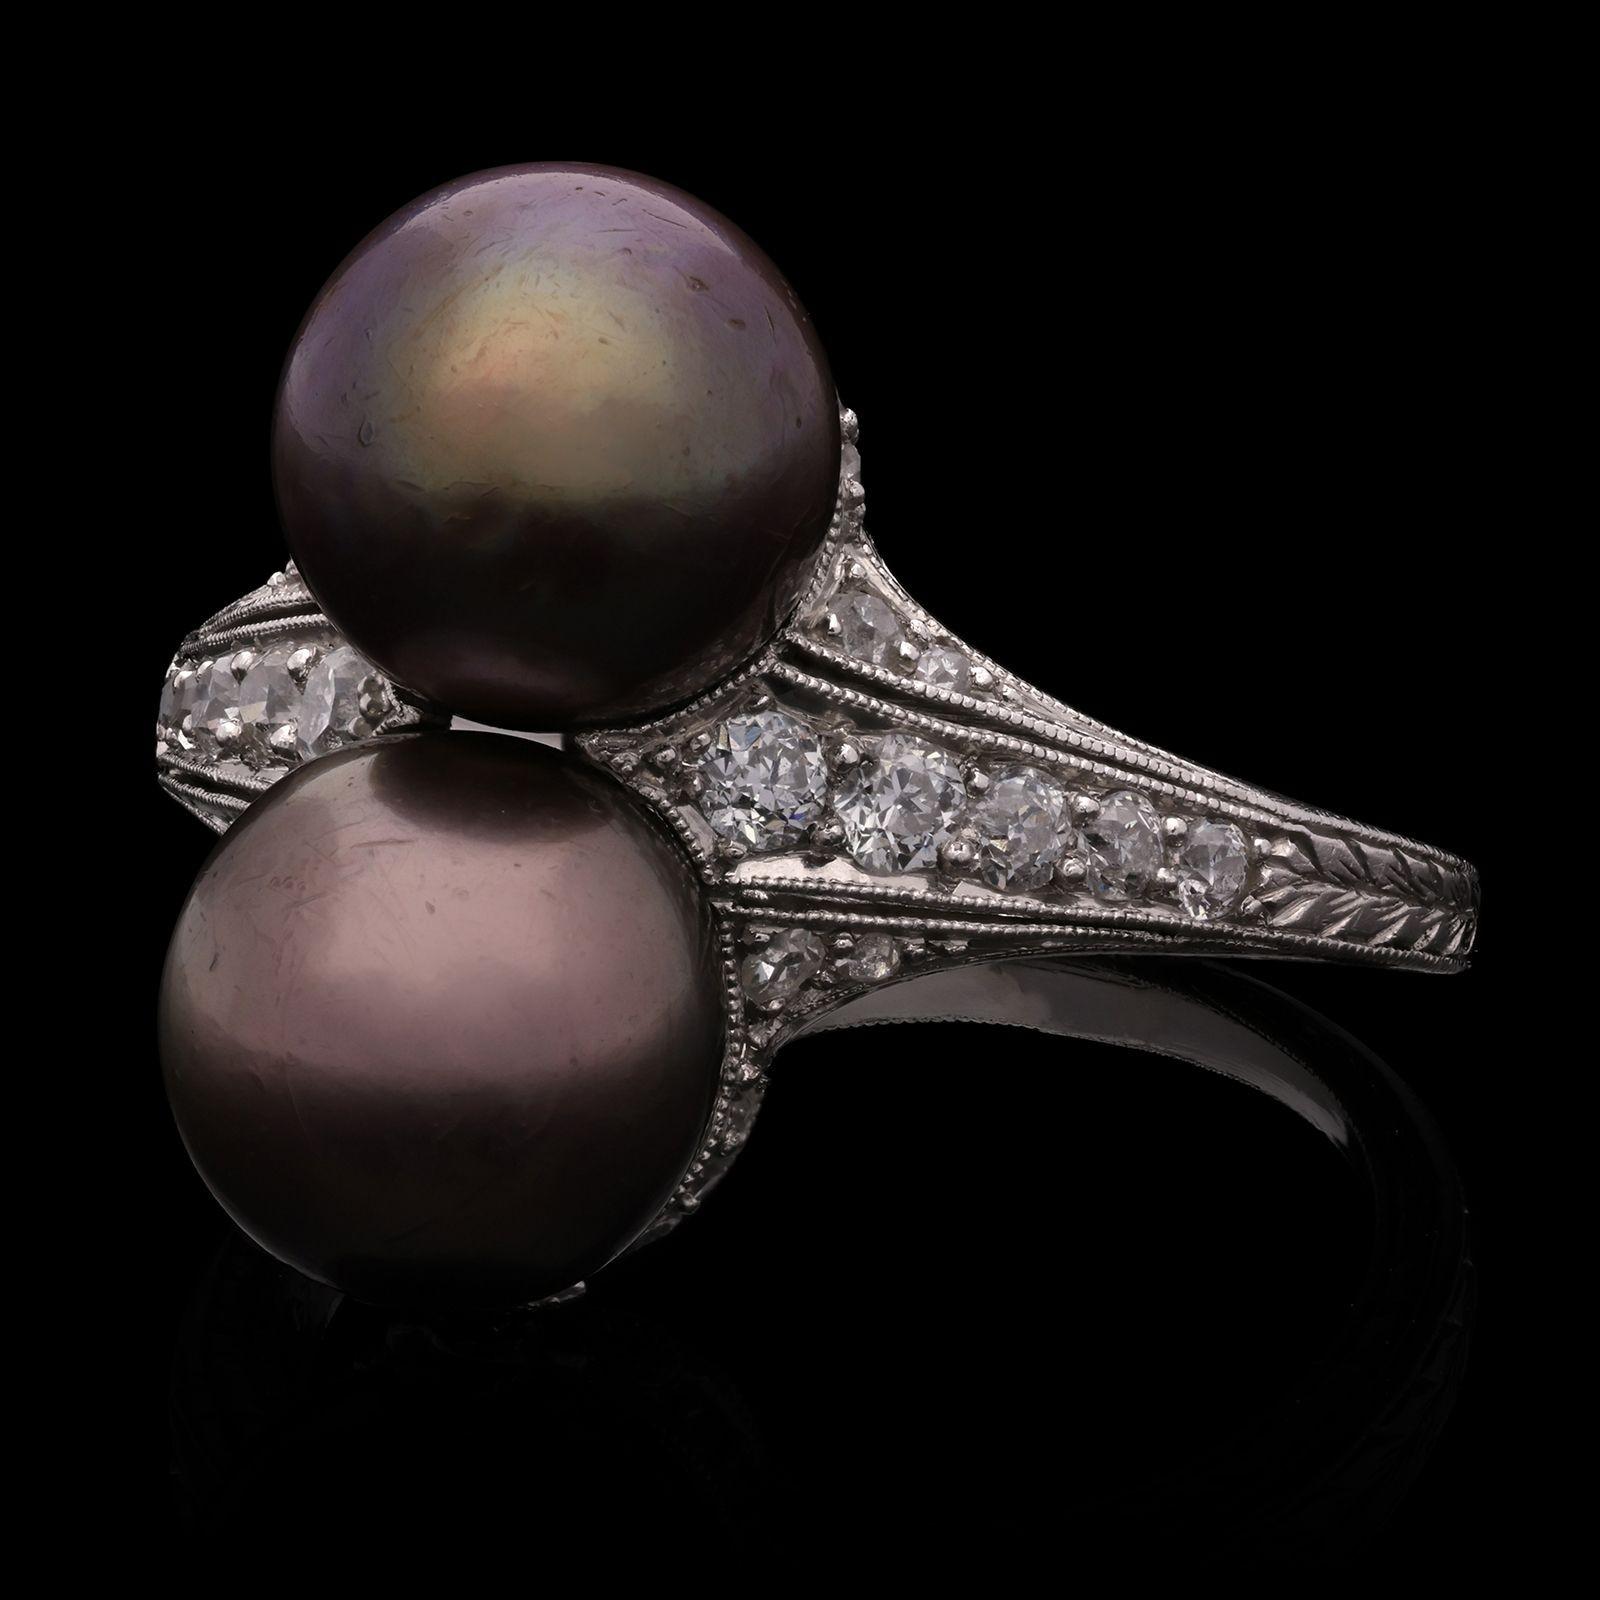 Ein wunderschöner edwardianischer Perlen- und Diamantring von Gattle, um 1910. Der Ring ist auf der Vorderseite vertikal mit zwei braun-violetten, runden, natürlichen Salzwasserperlen besetzt, die sich zwischen konisch zulaufenden Schultern